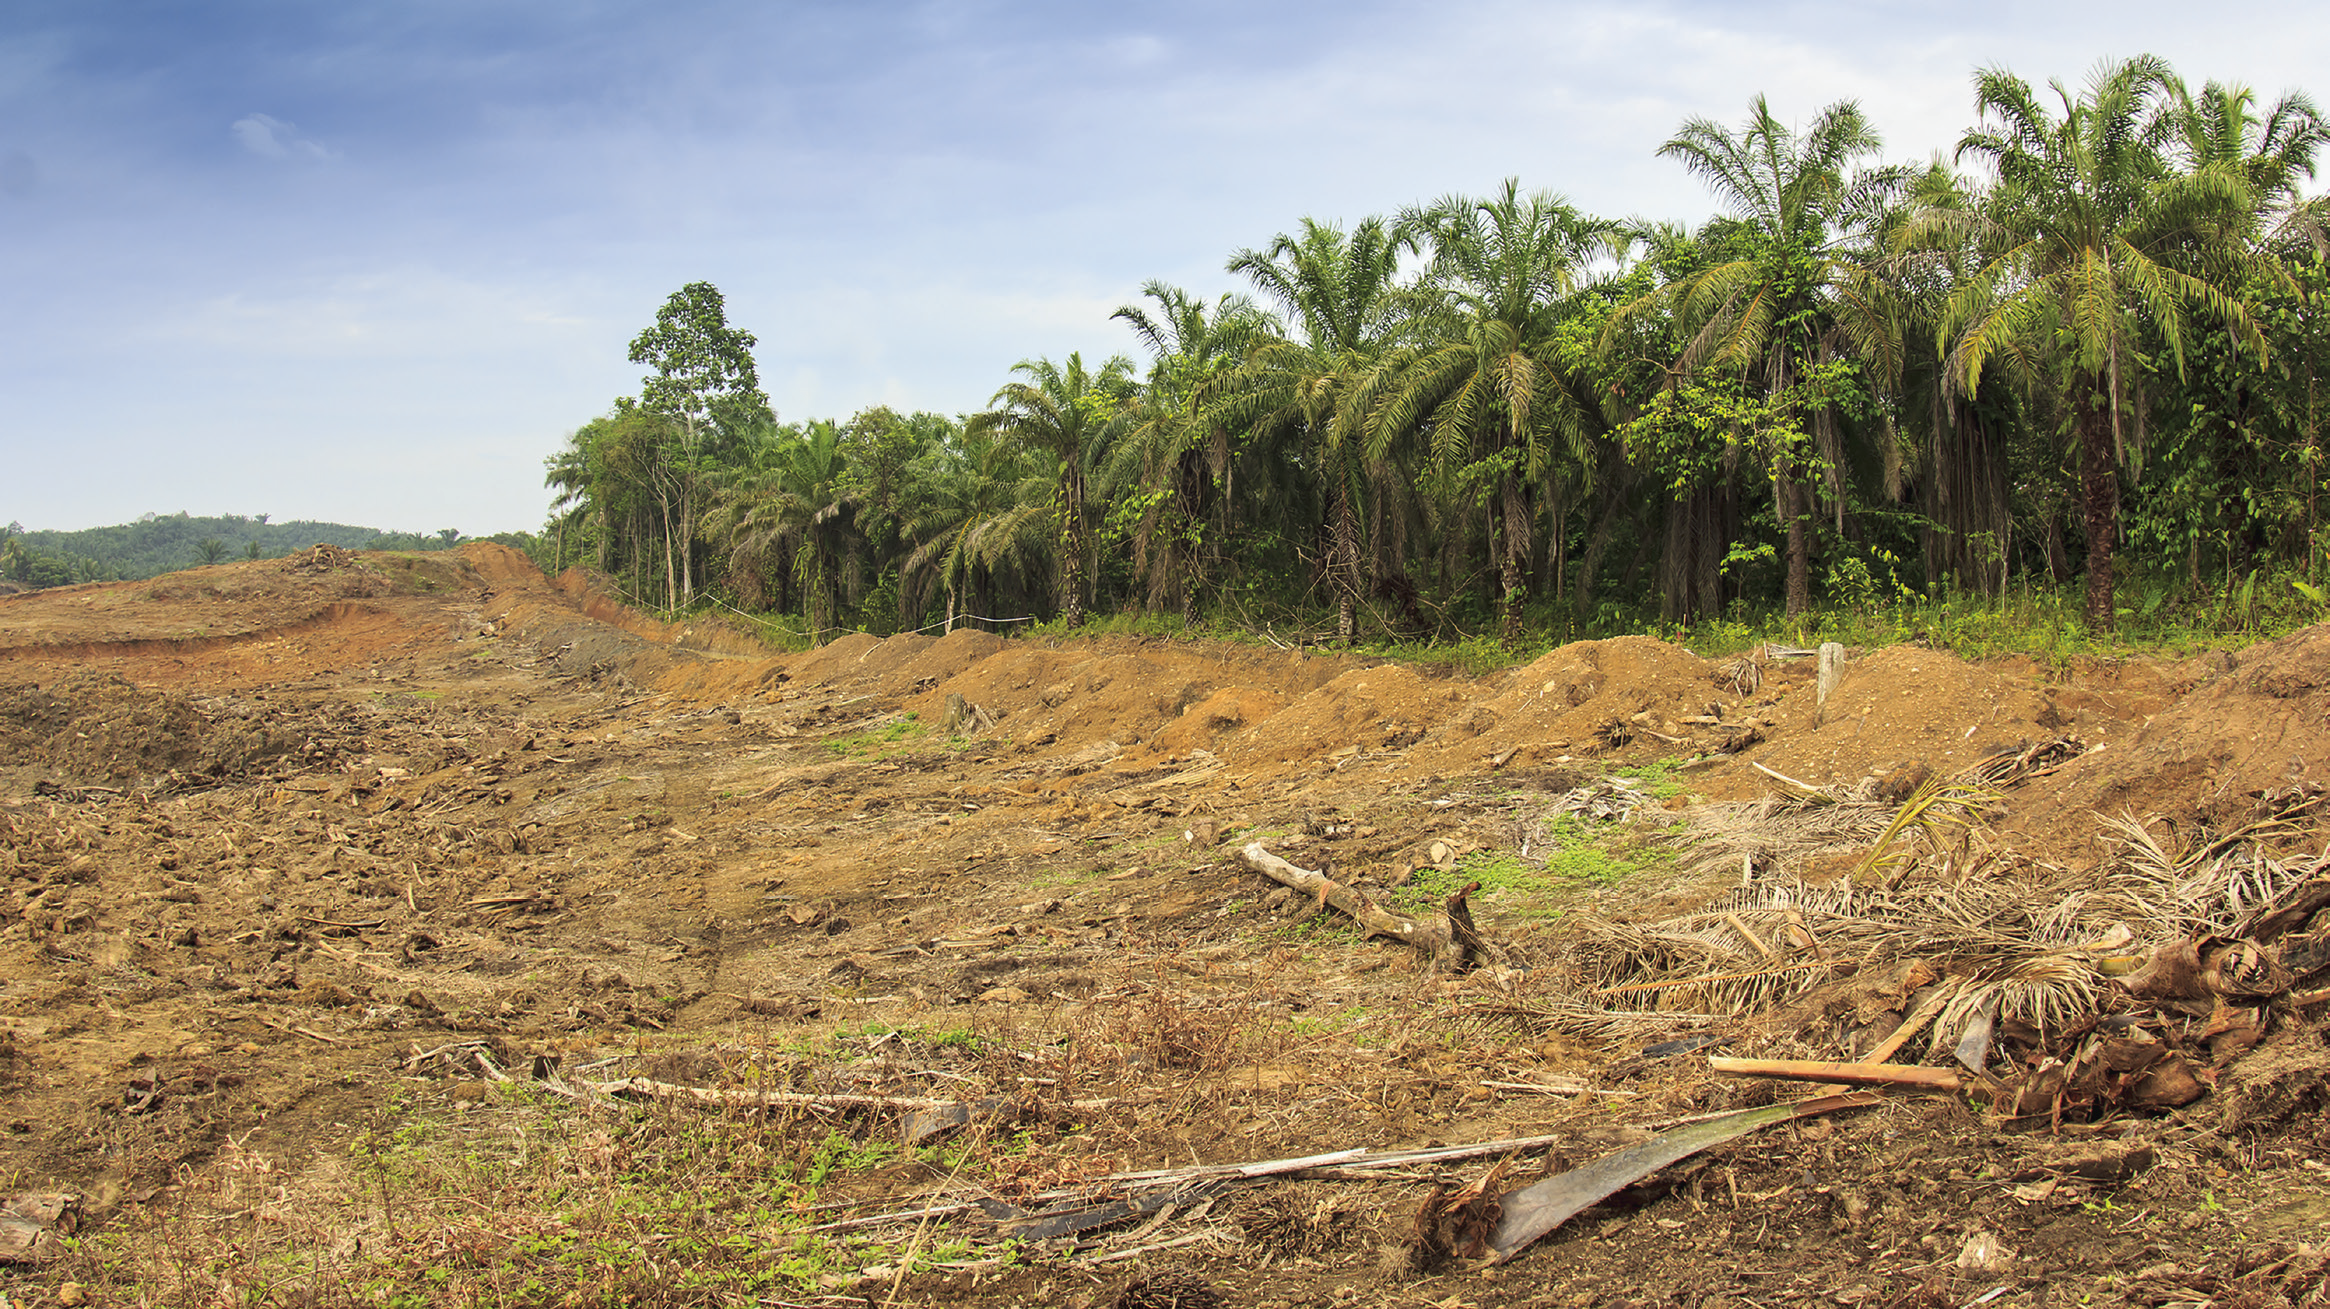 FIG. 1. Deforestation along an oil palm plantation.